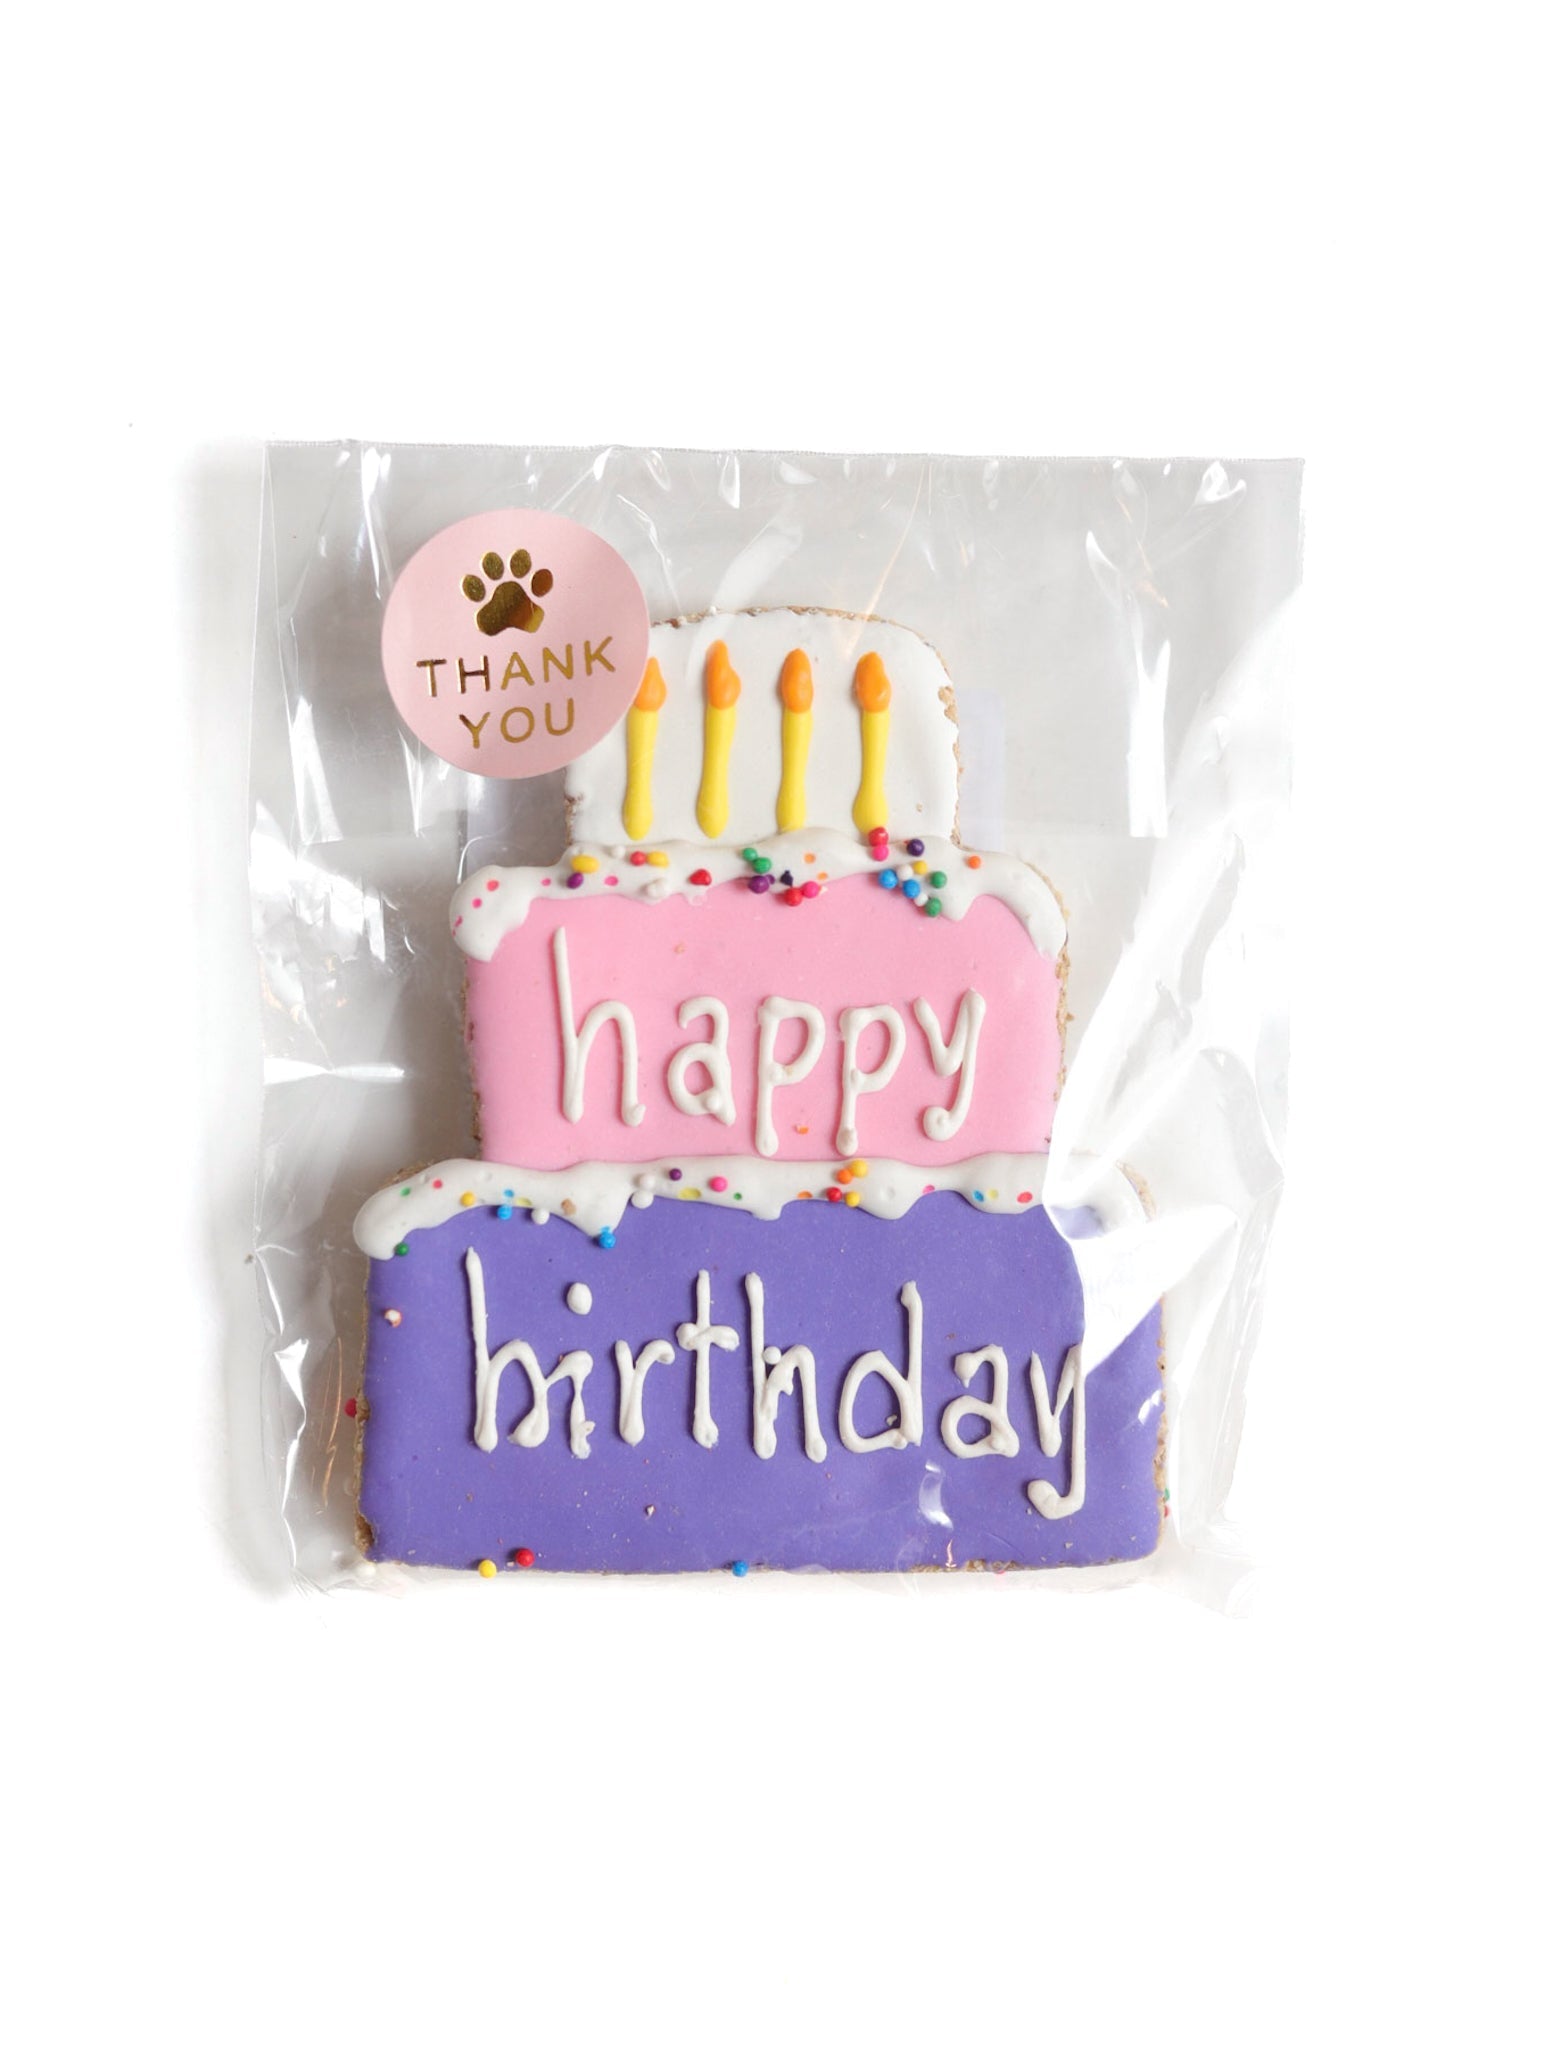 Decorated Treats | Urban Dog Barkery - Birthday Cake - Love